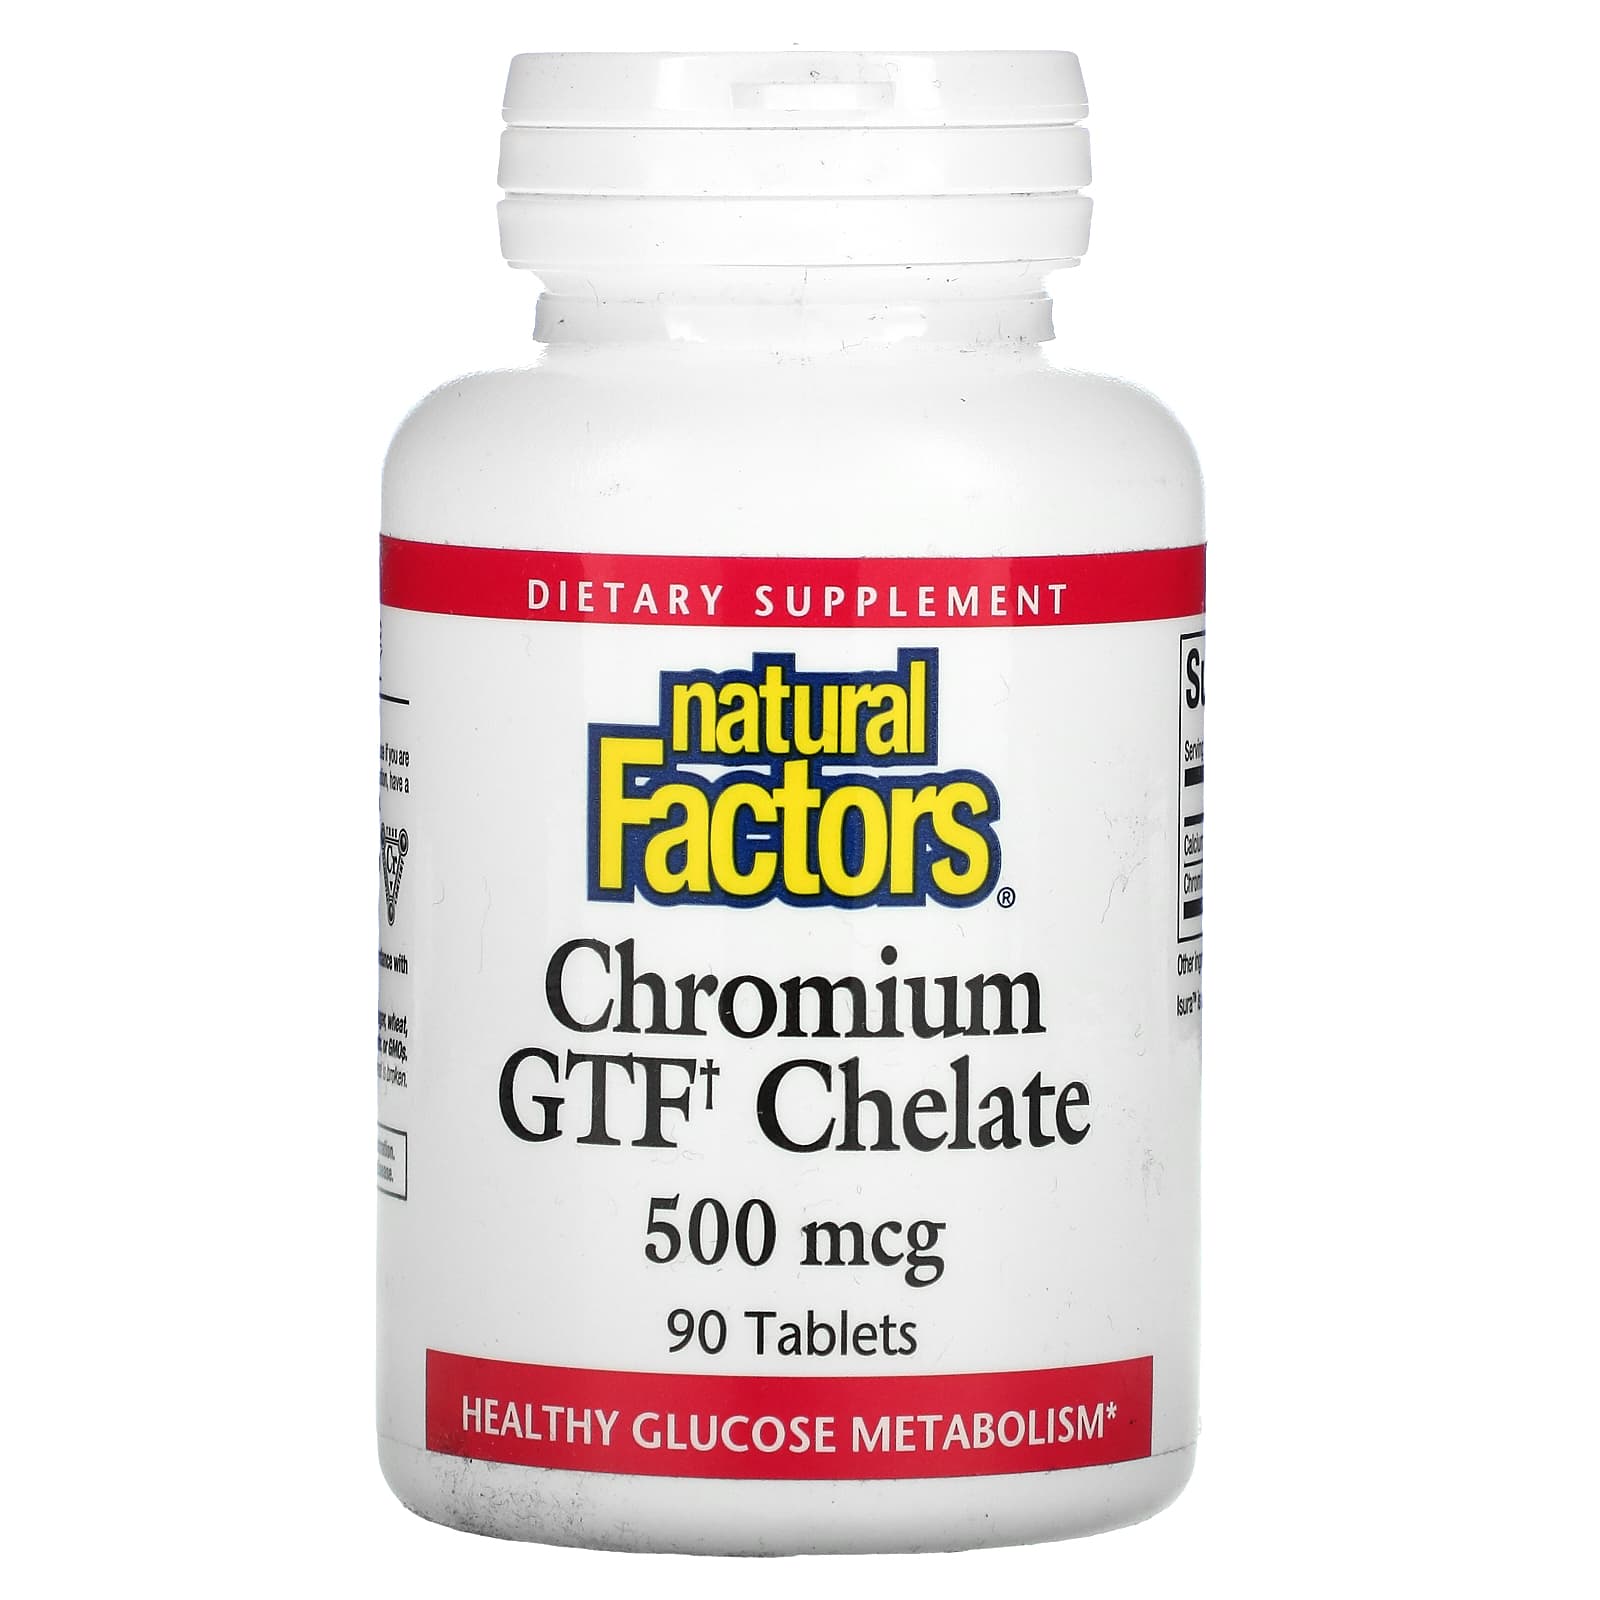 Chromium GTF Chelate 500 mcg (90 tablets)